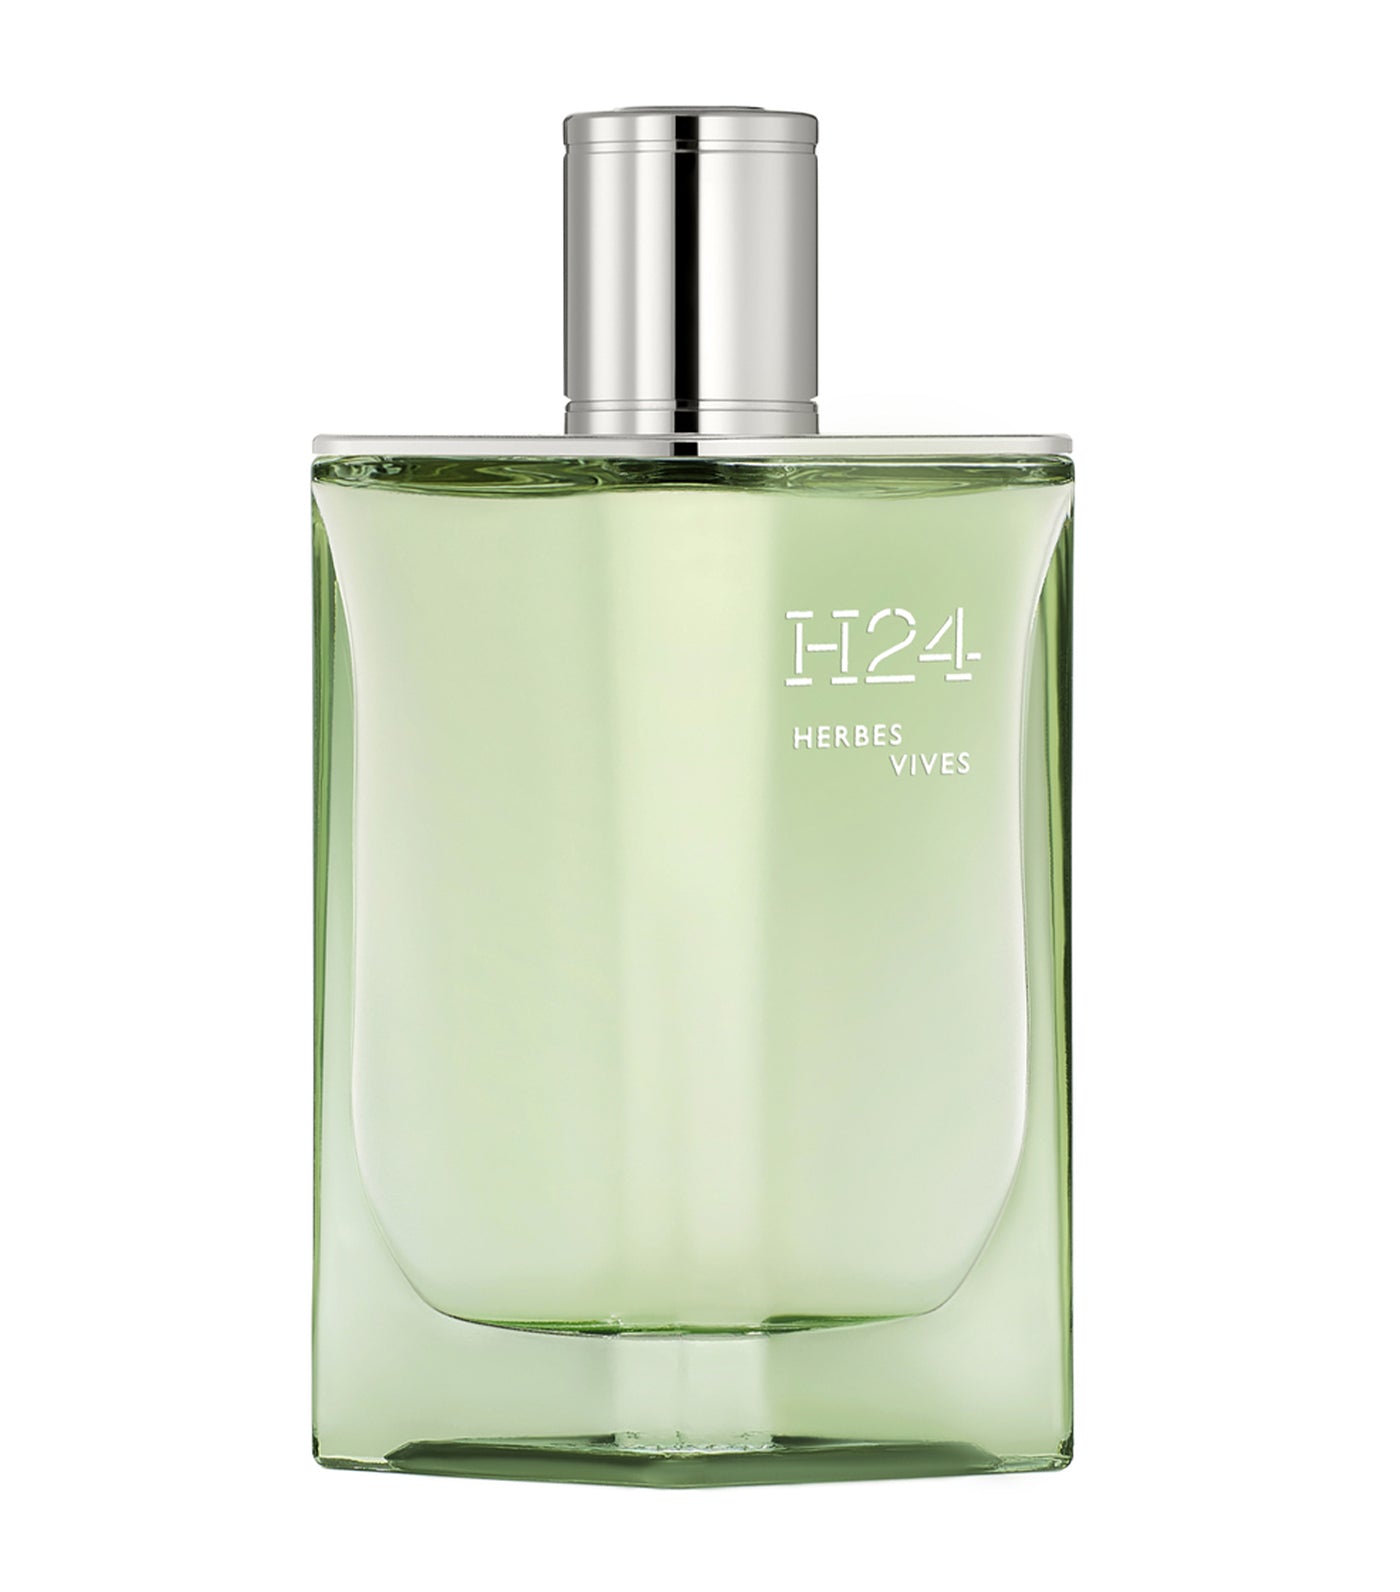 H24 Herbes Vives, Eau de Parfum